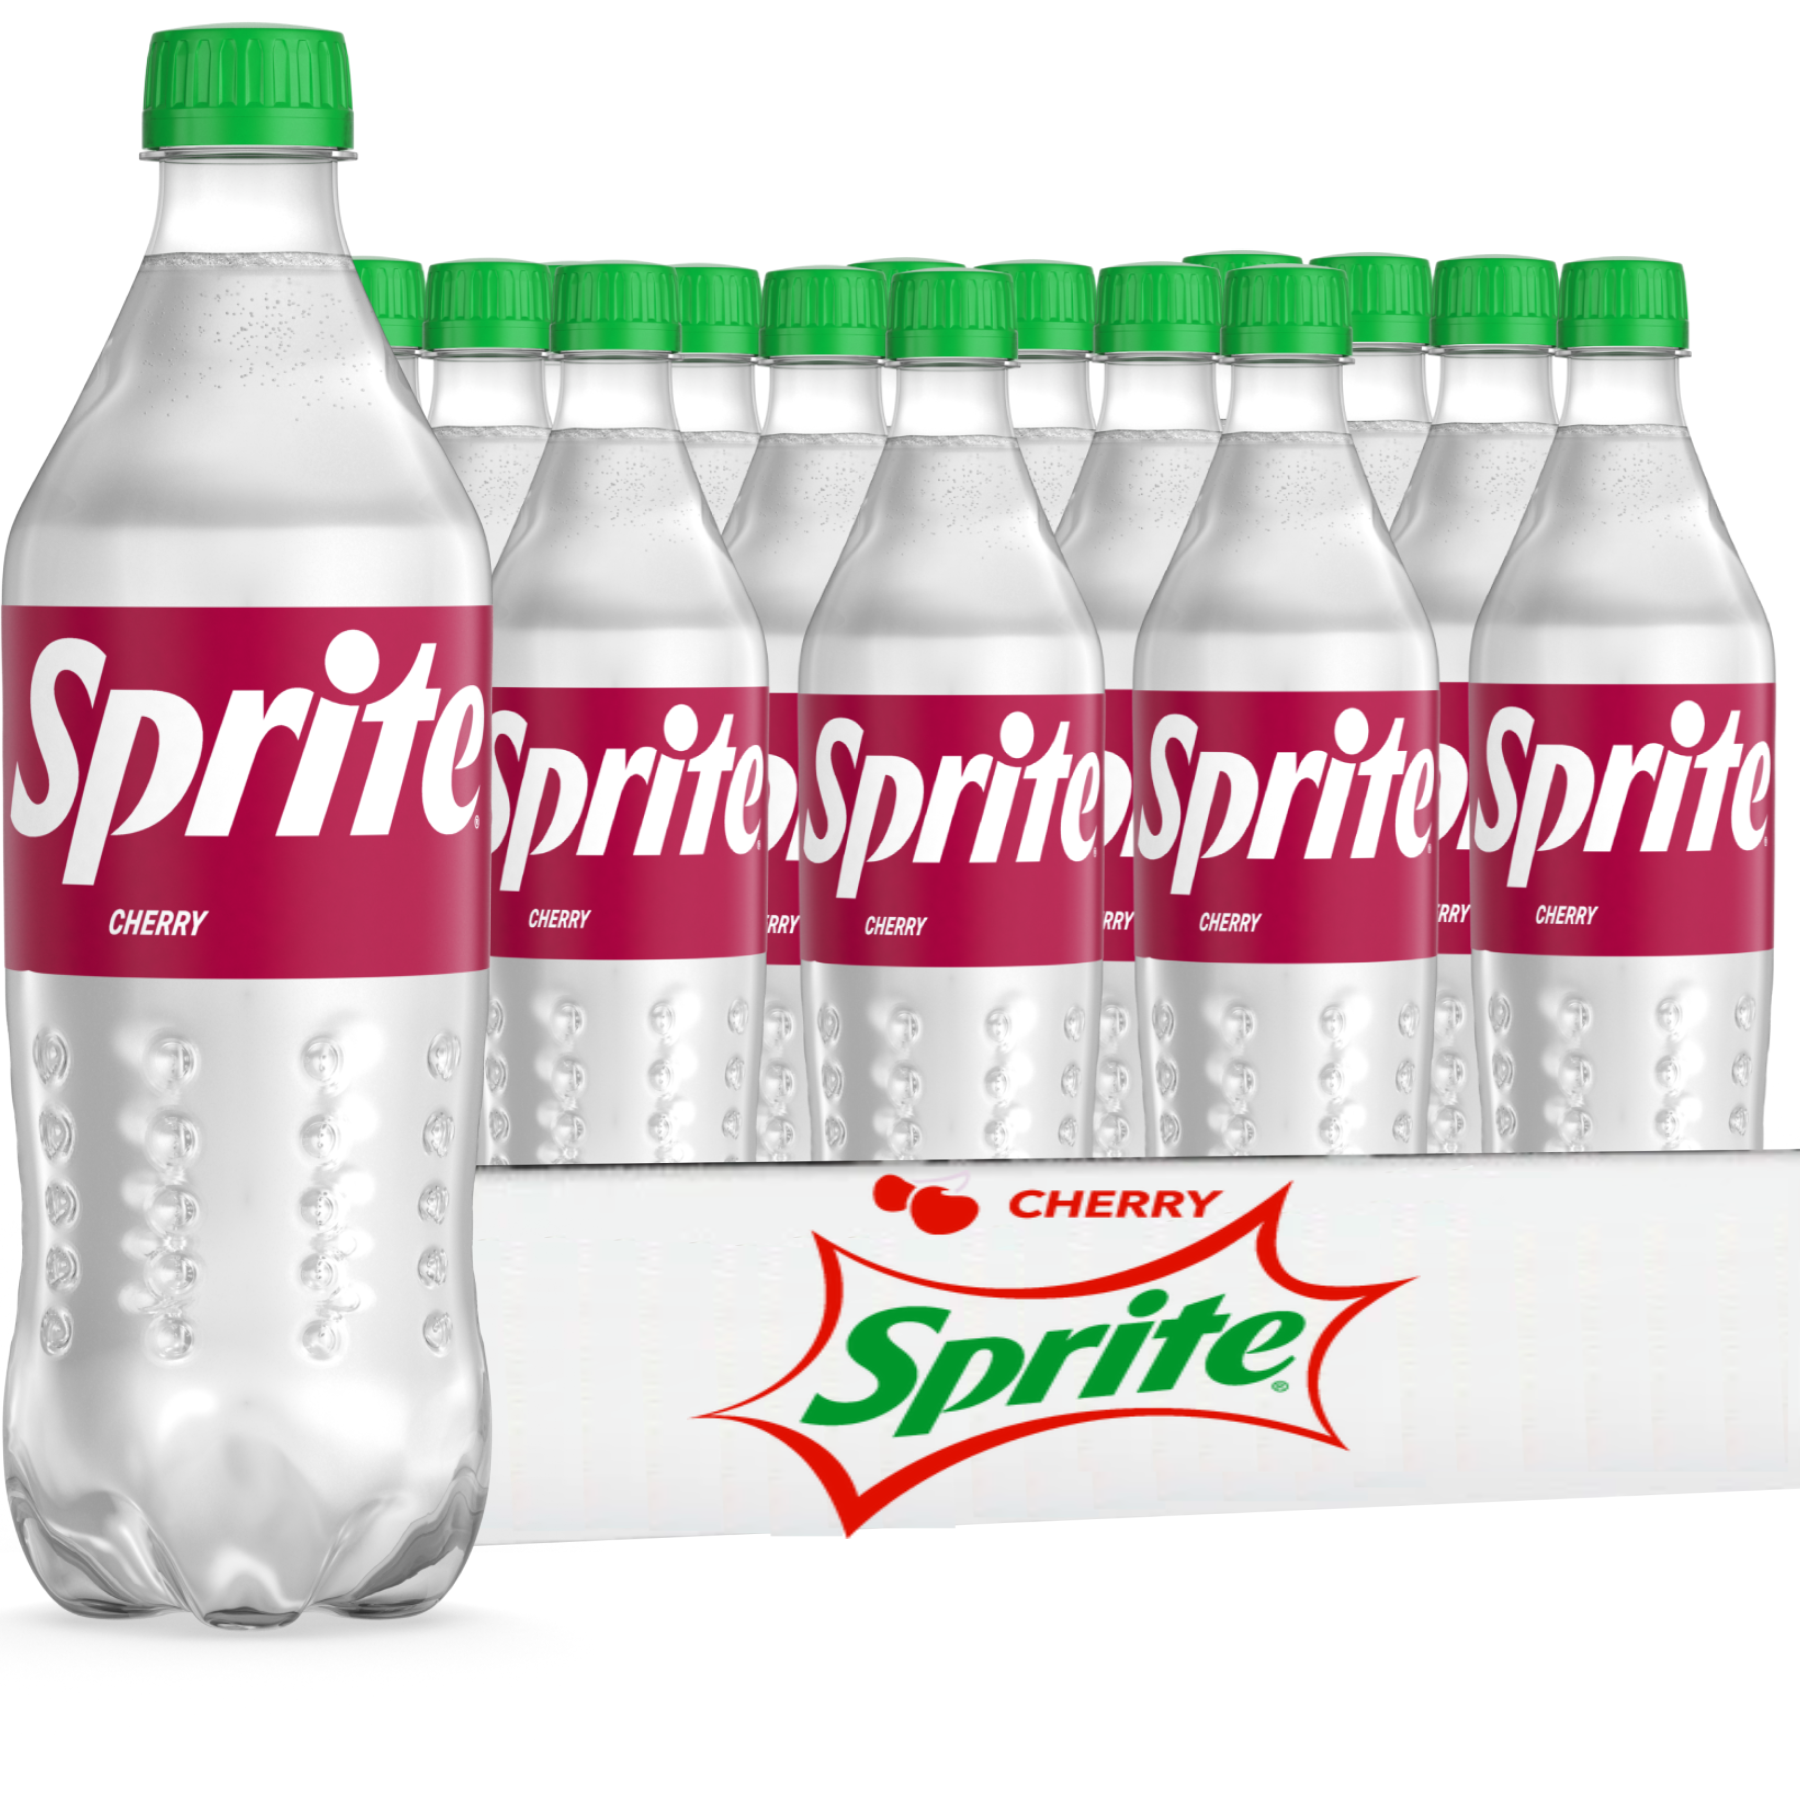 Sprite - 20 fl oz Bottle